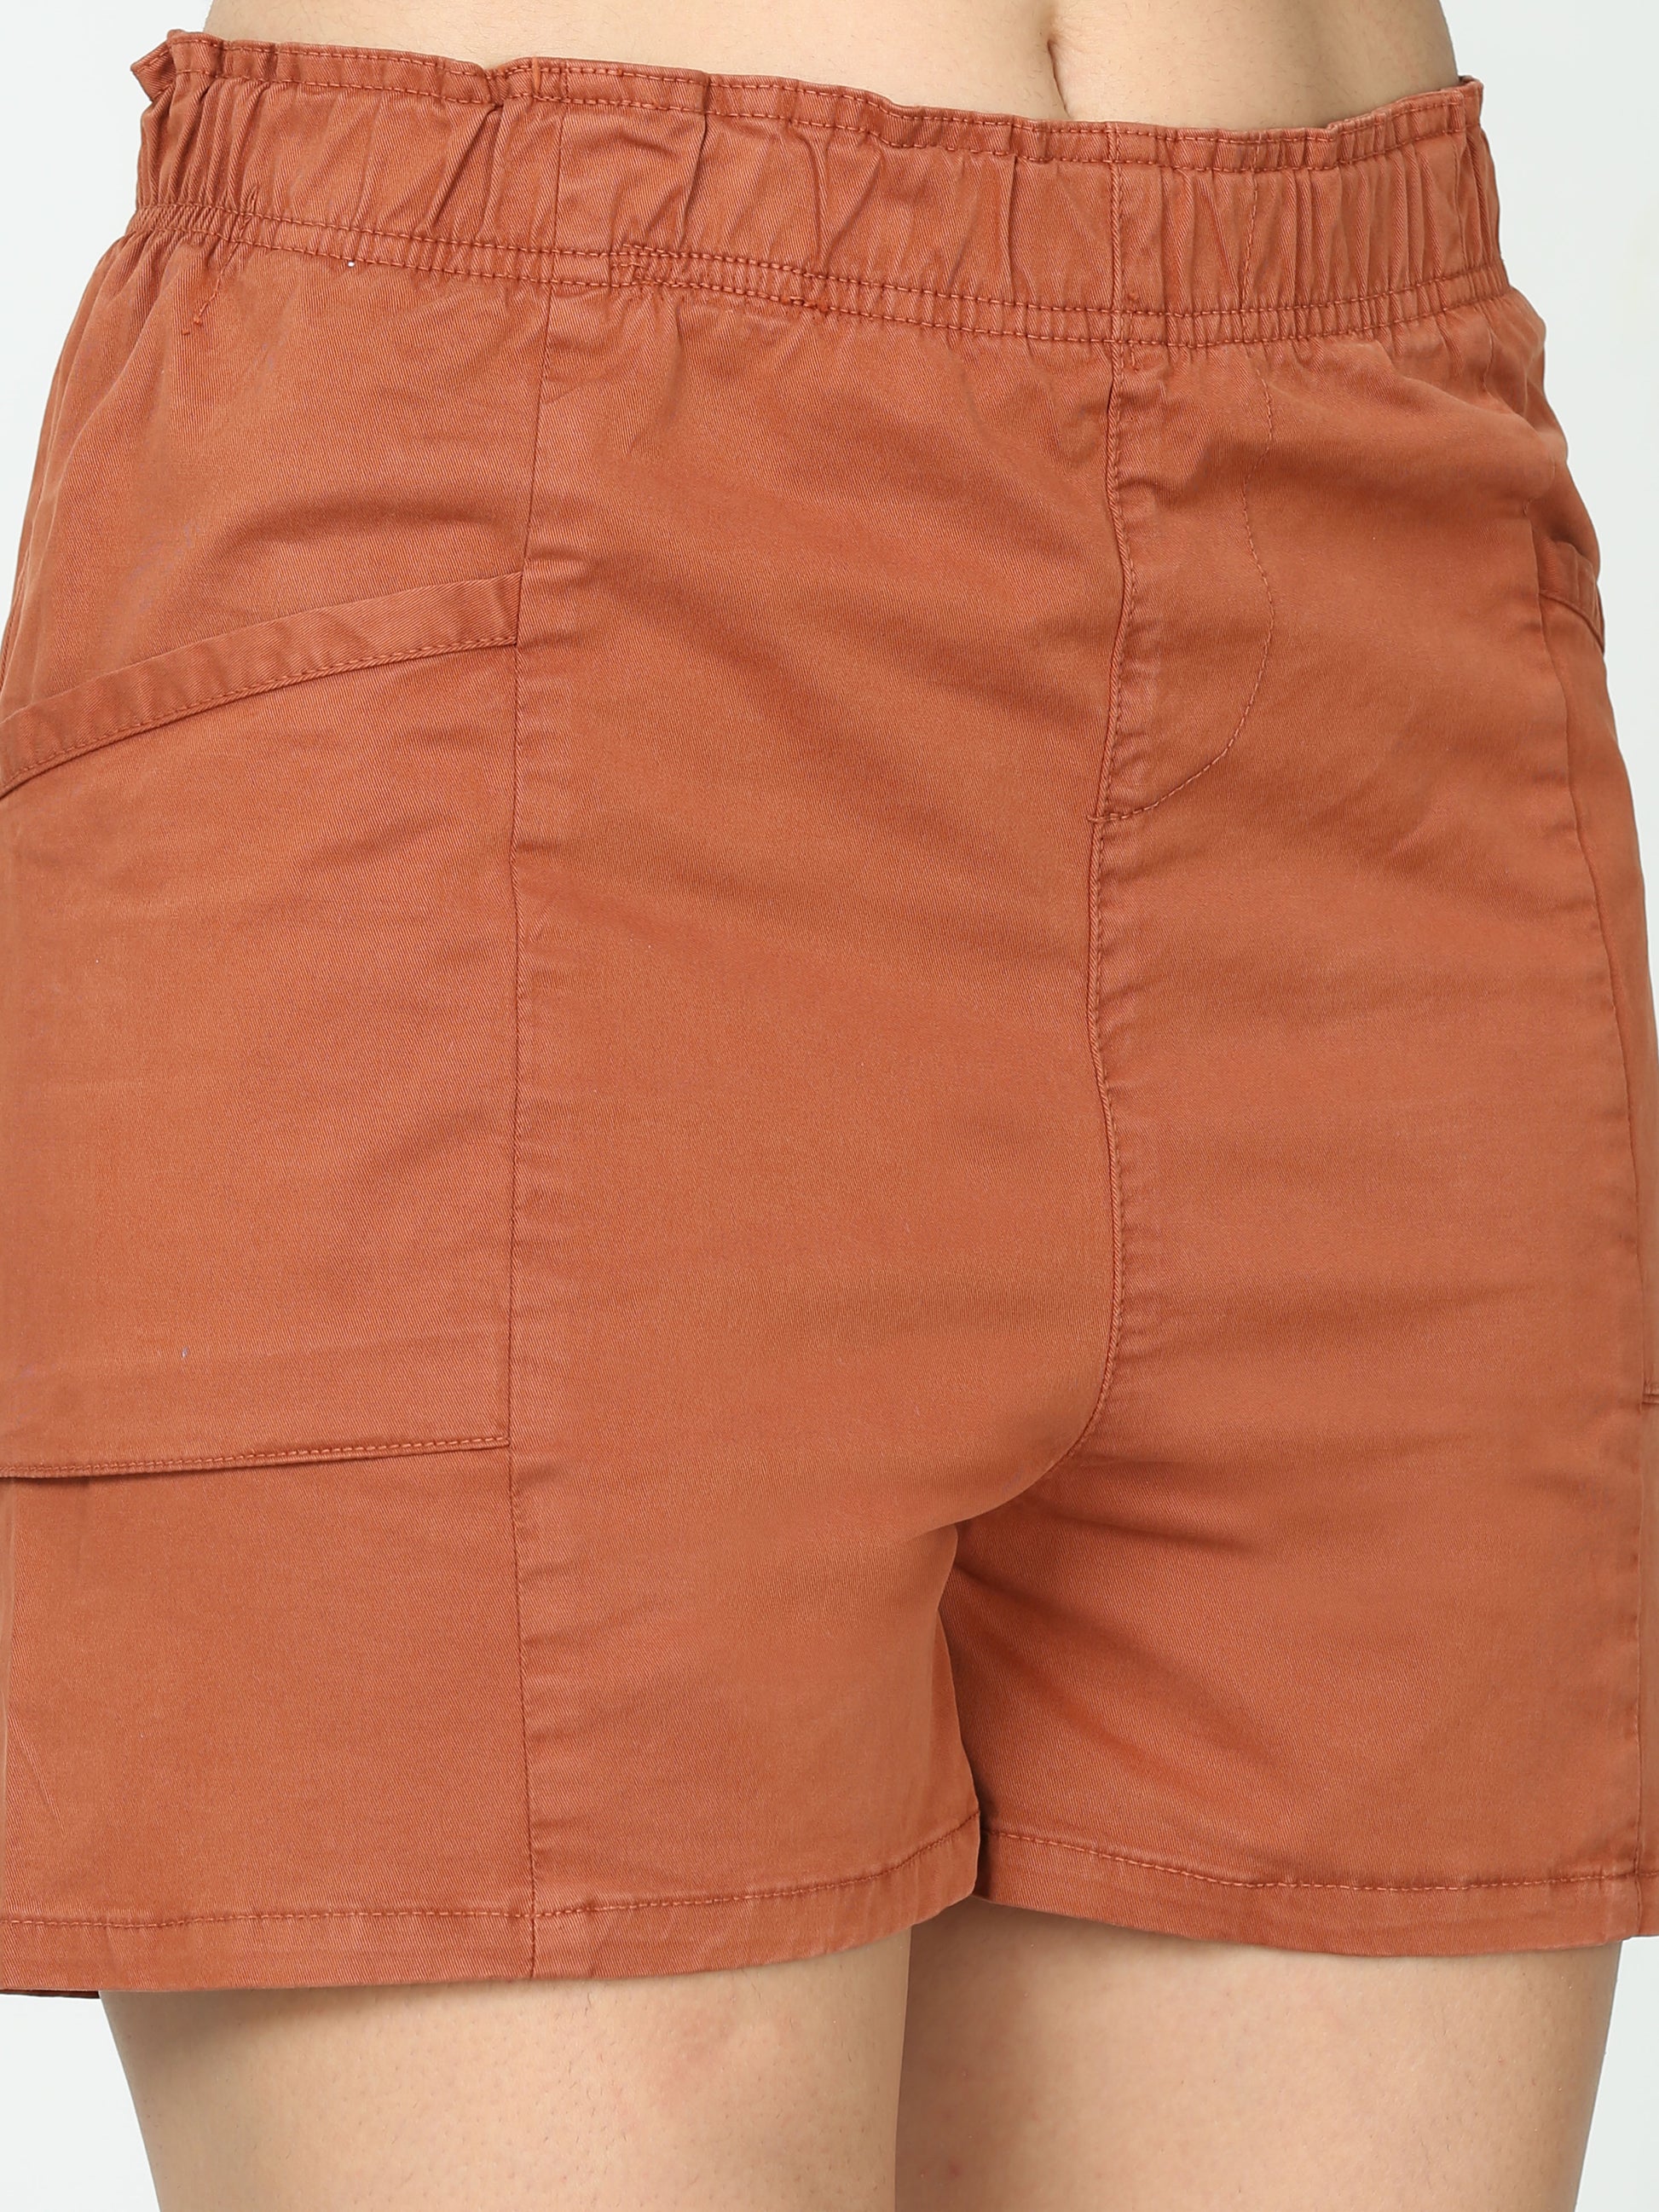 Shop Women's Rust Linen Cargo Pants Online